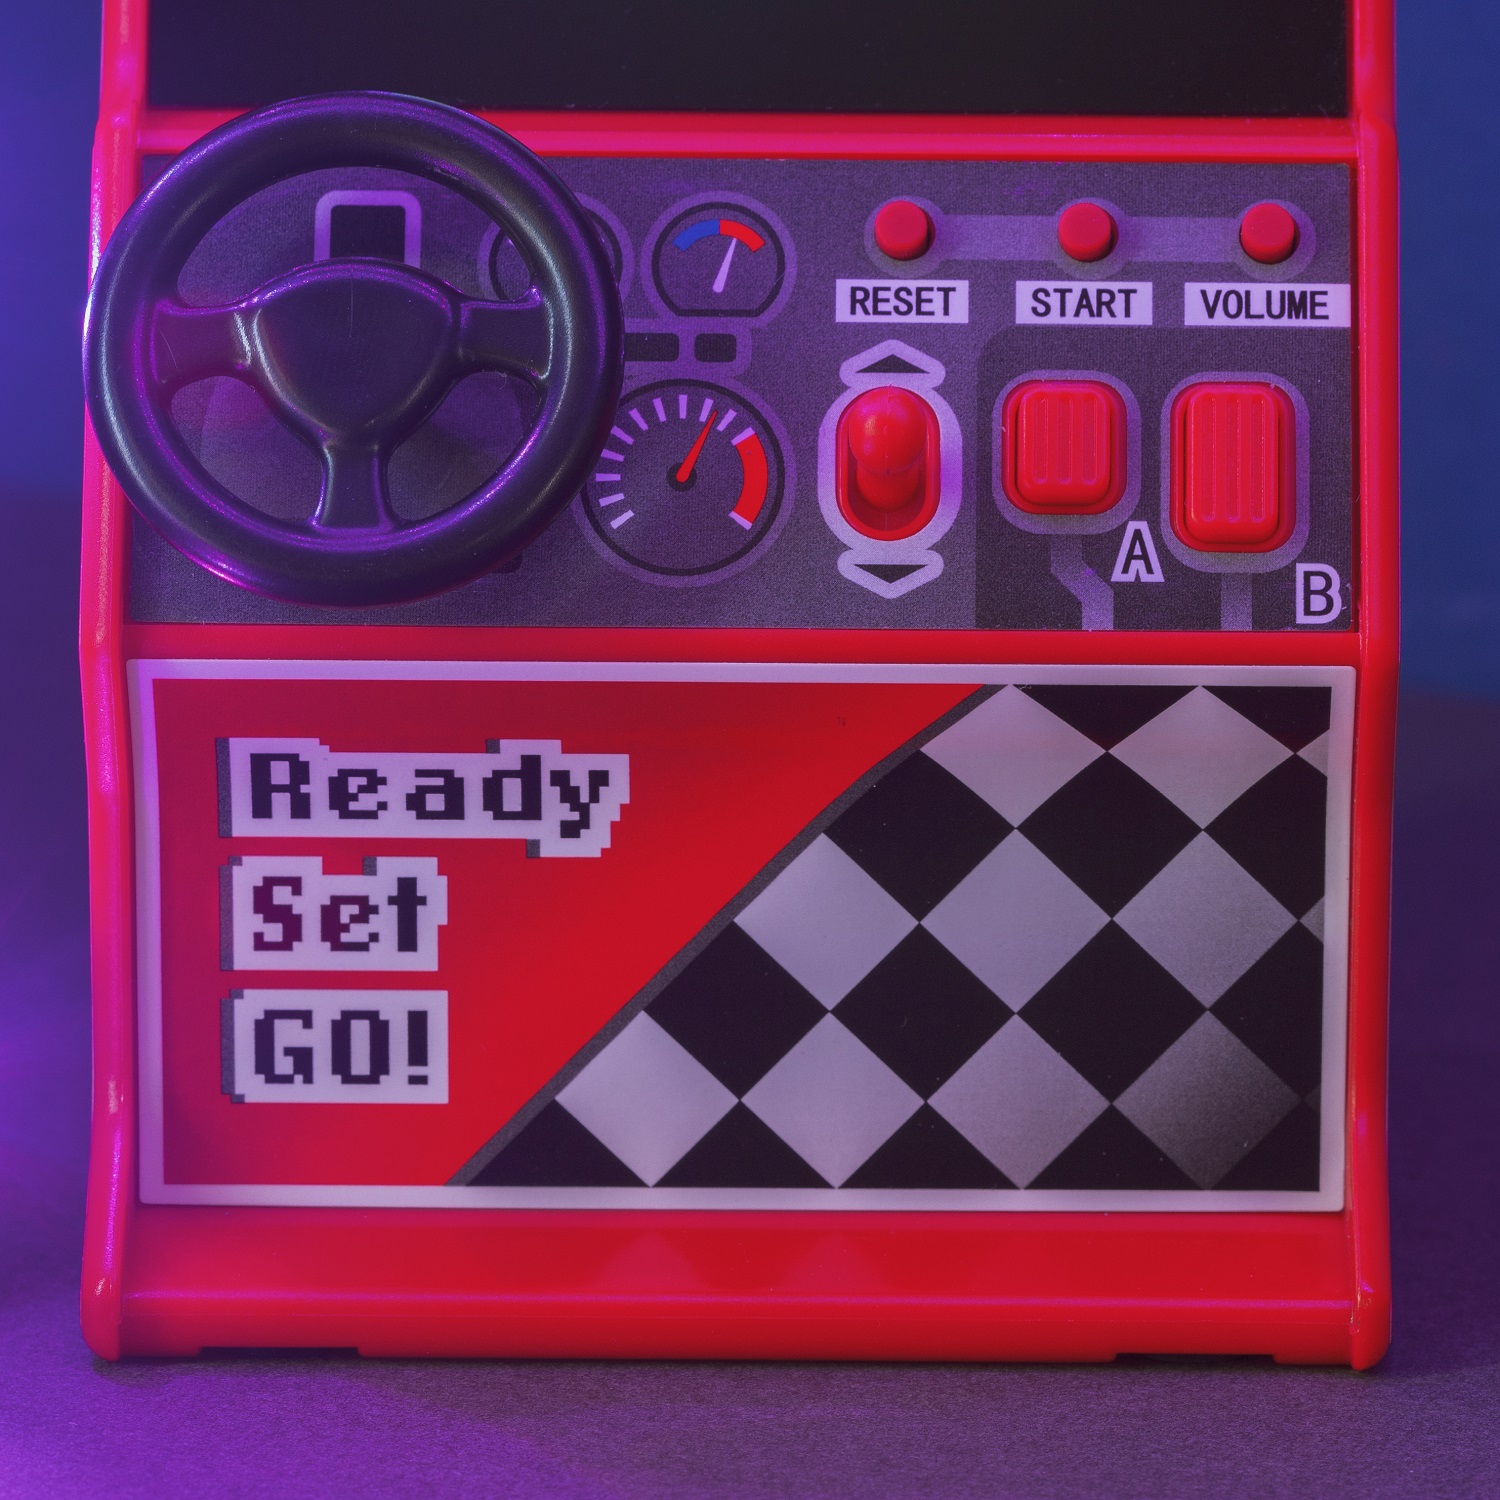 Retro Racing inkl. 30x 8-Bit Spiele